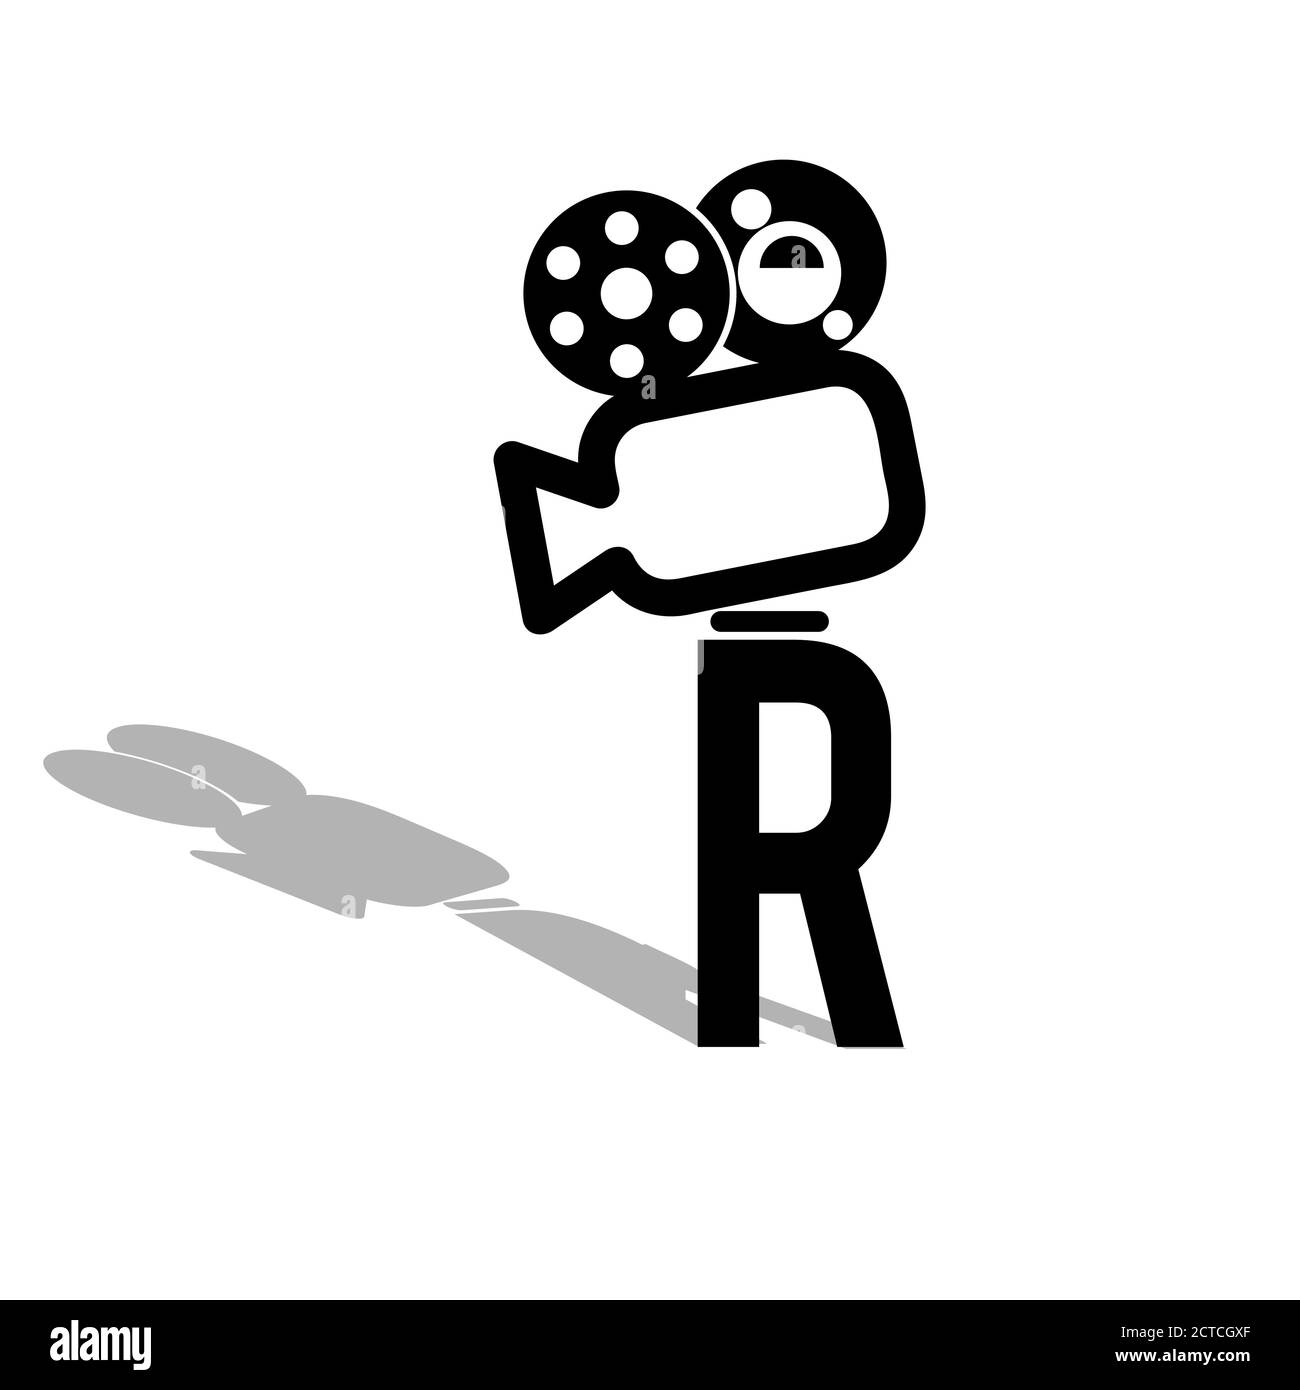 Nouveau symbole moderne et simple associé à un film lettre R. illustrations vectorielles pour la création du logo de la cinématographie de production Illustration de Vecteur